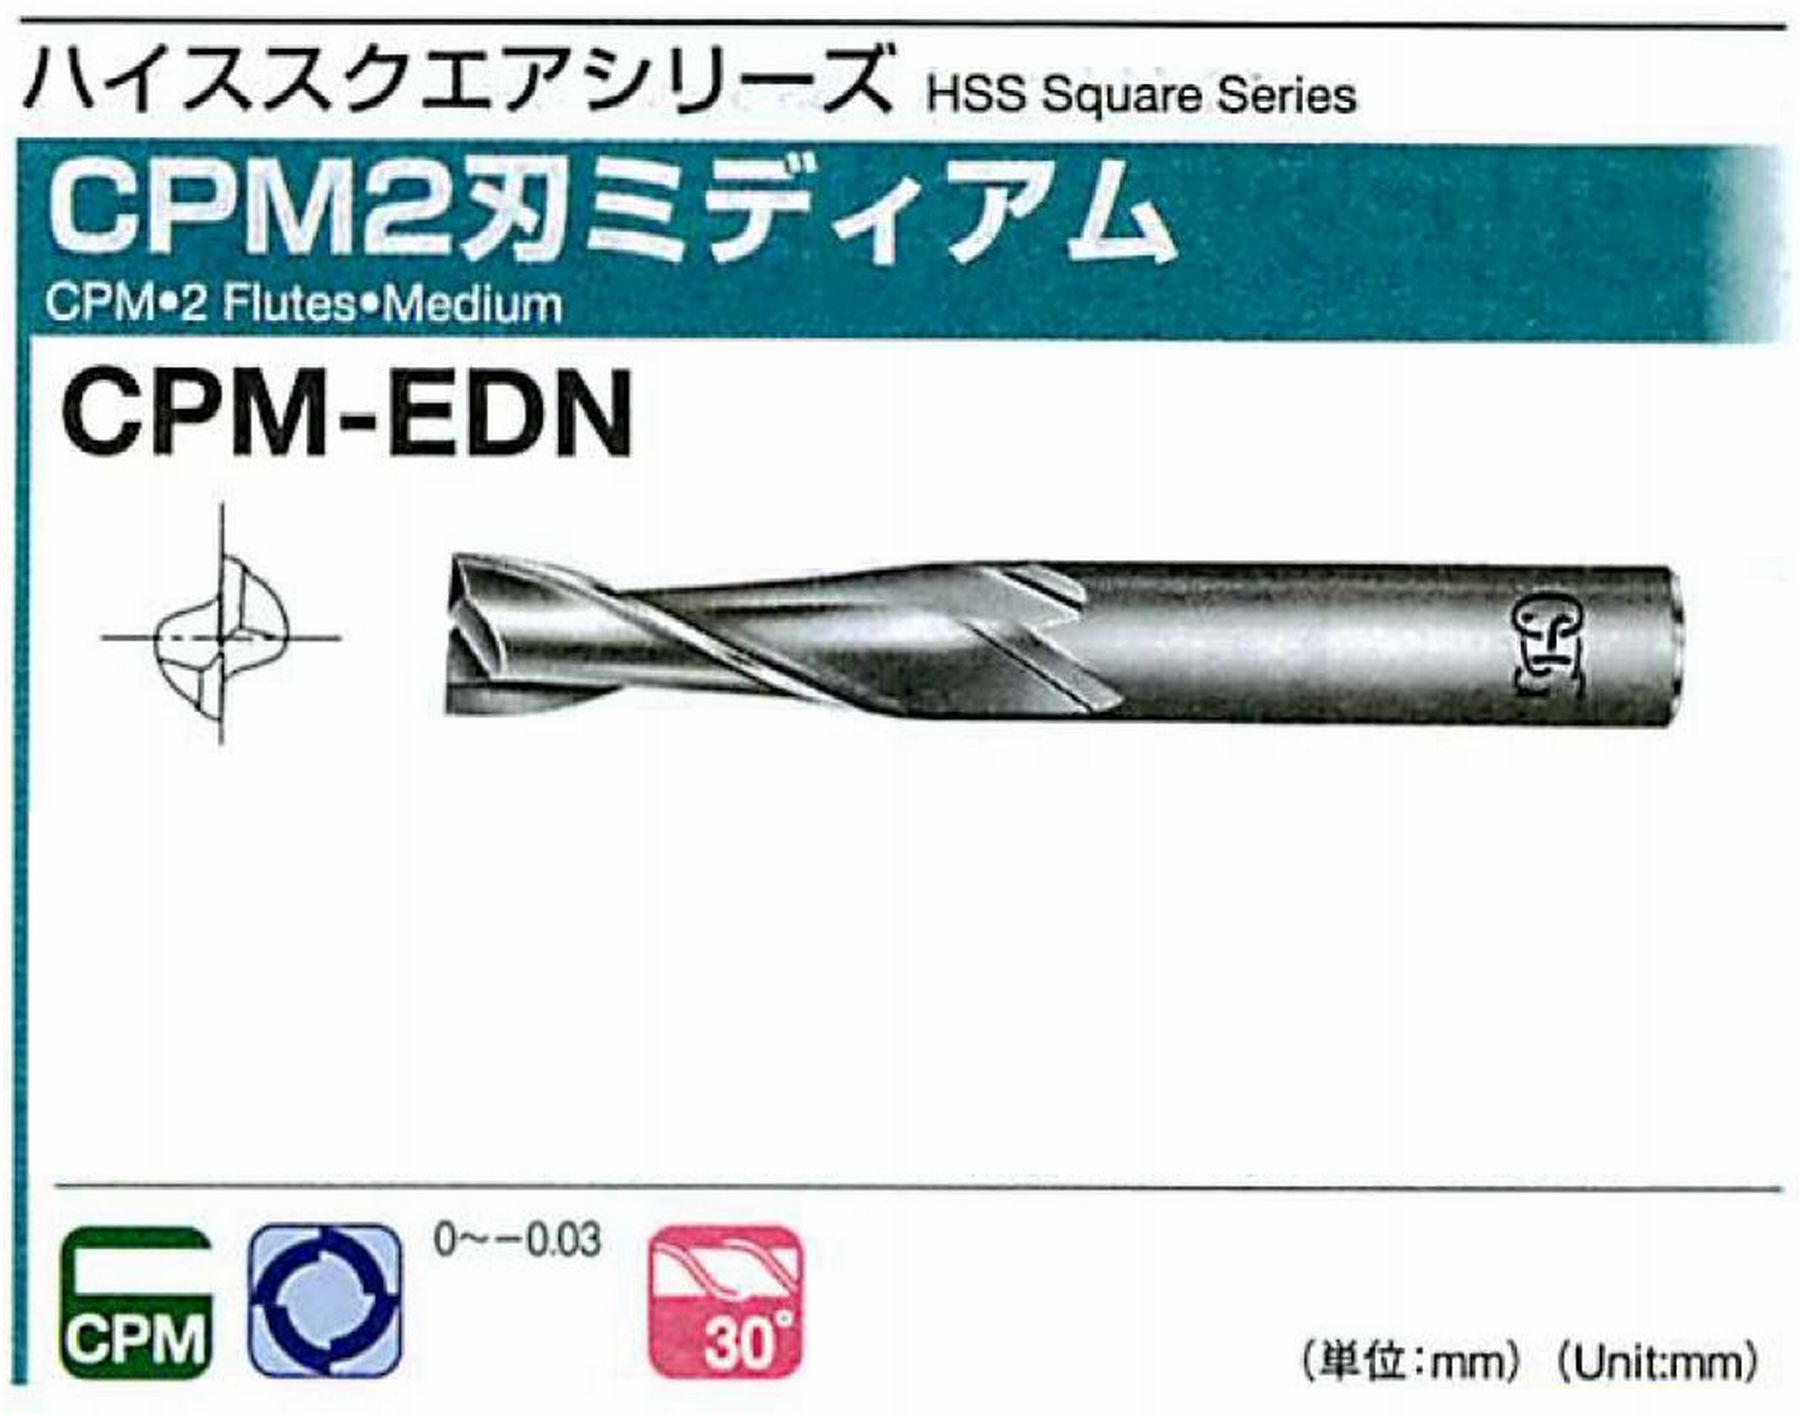 オーエスジー/OSG CPM2刃 ミディアム CPM-EDN 外径19 全長110 刃長45 シャンク径20mm